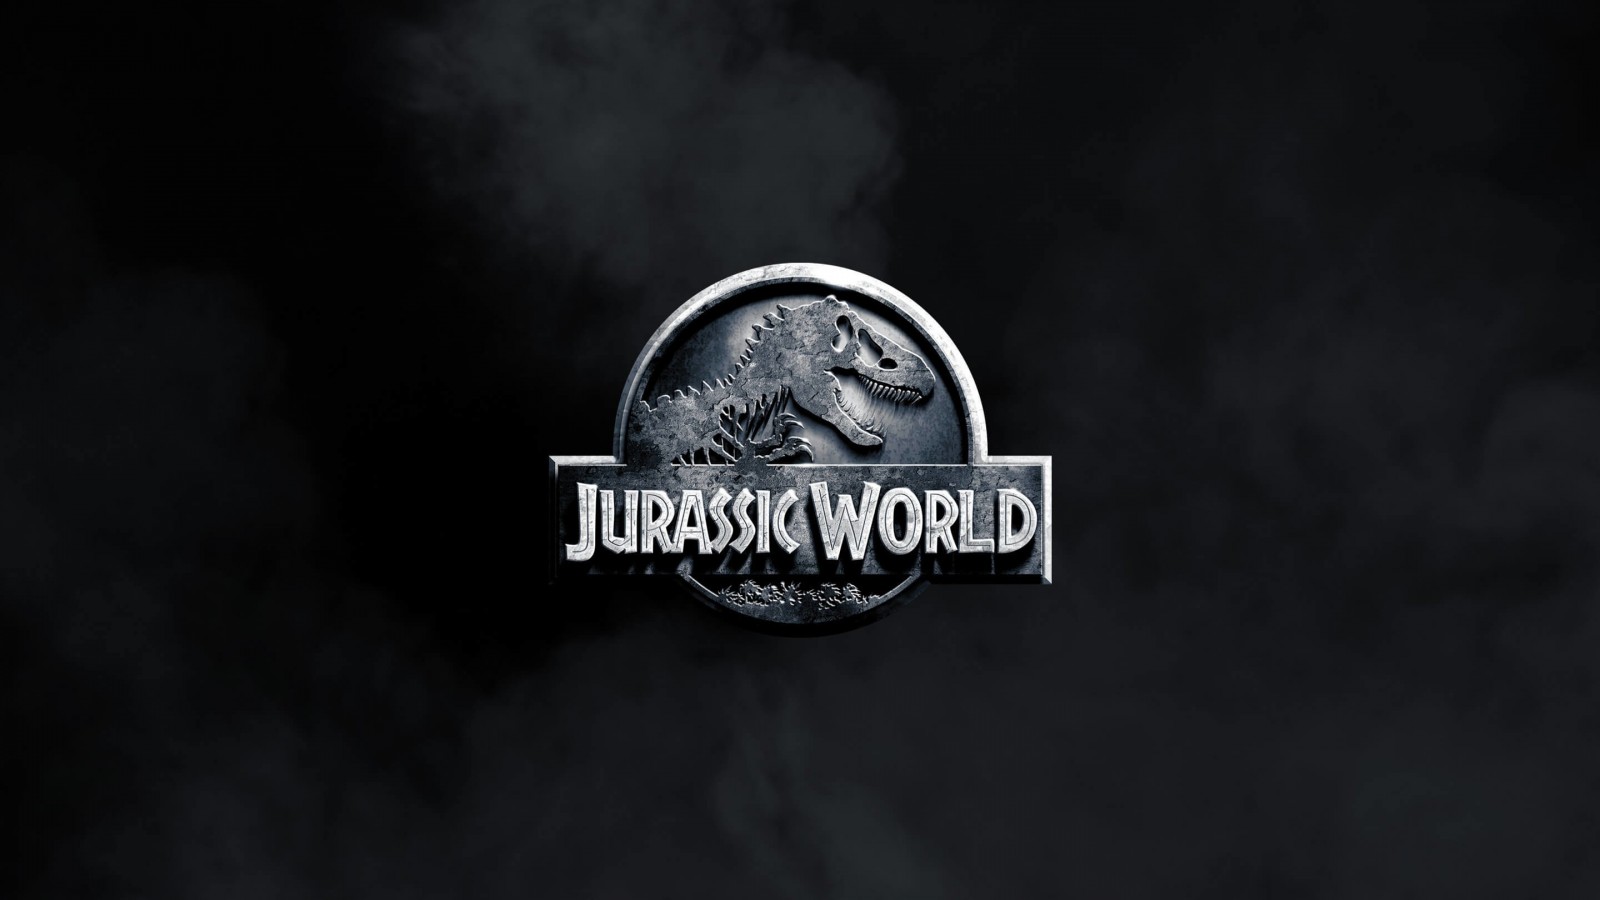 Jurassic World Wallpaper for Desktop 1600x900